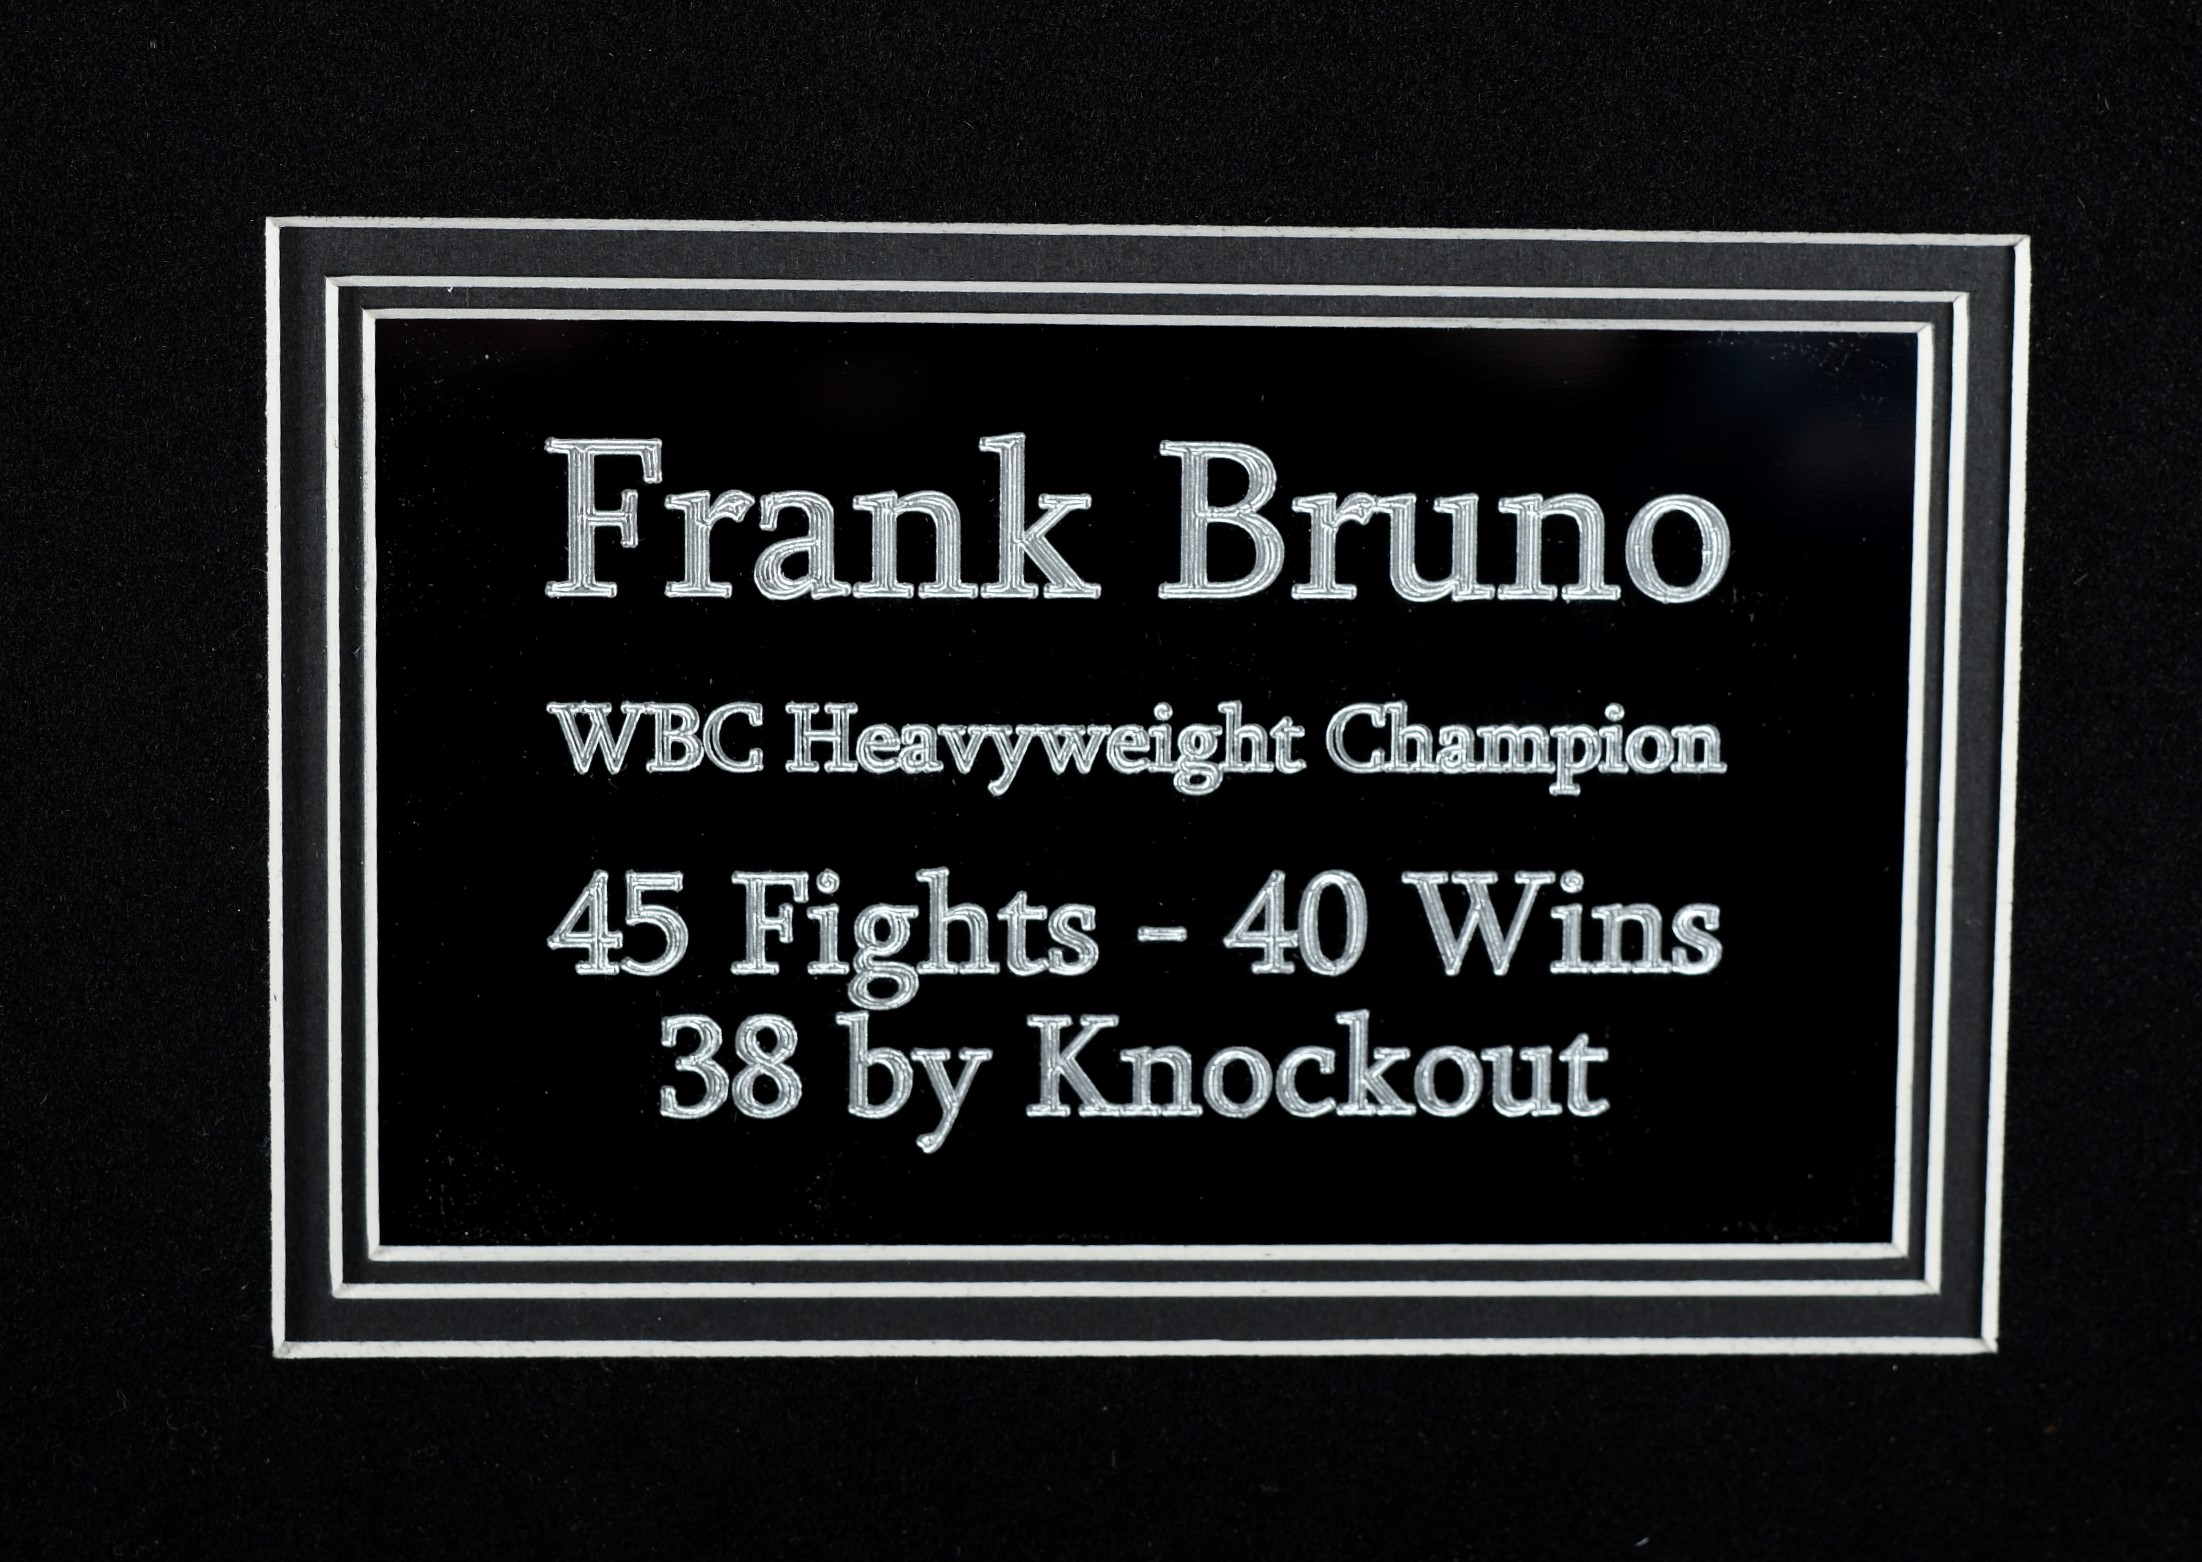 Frank Bruno - Image 3 of 3